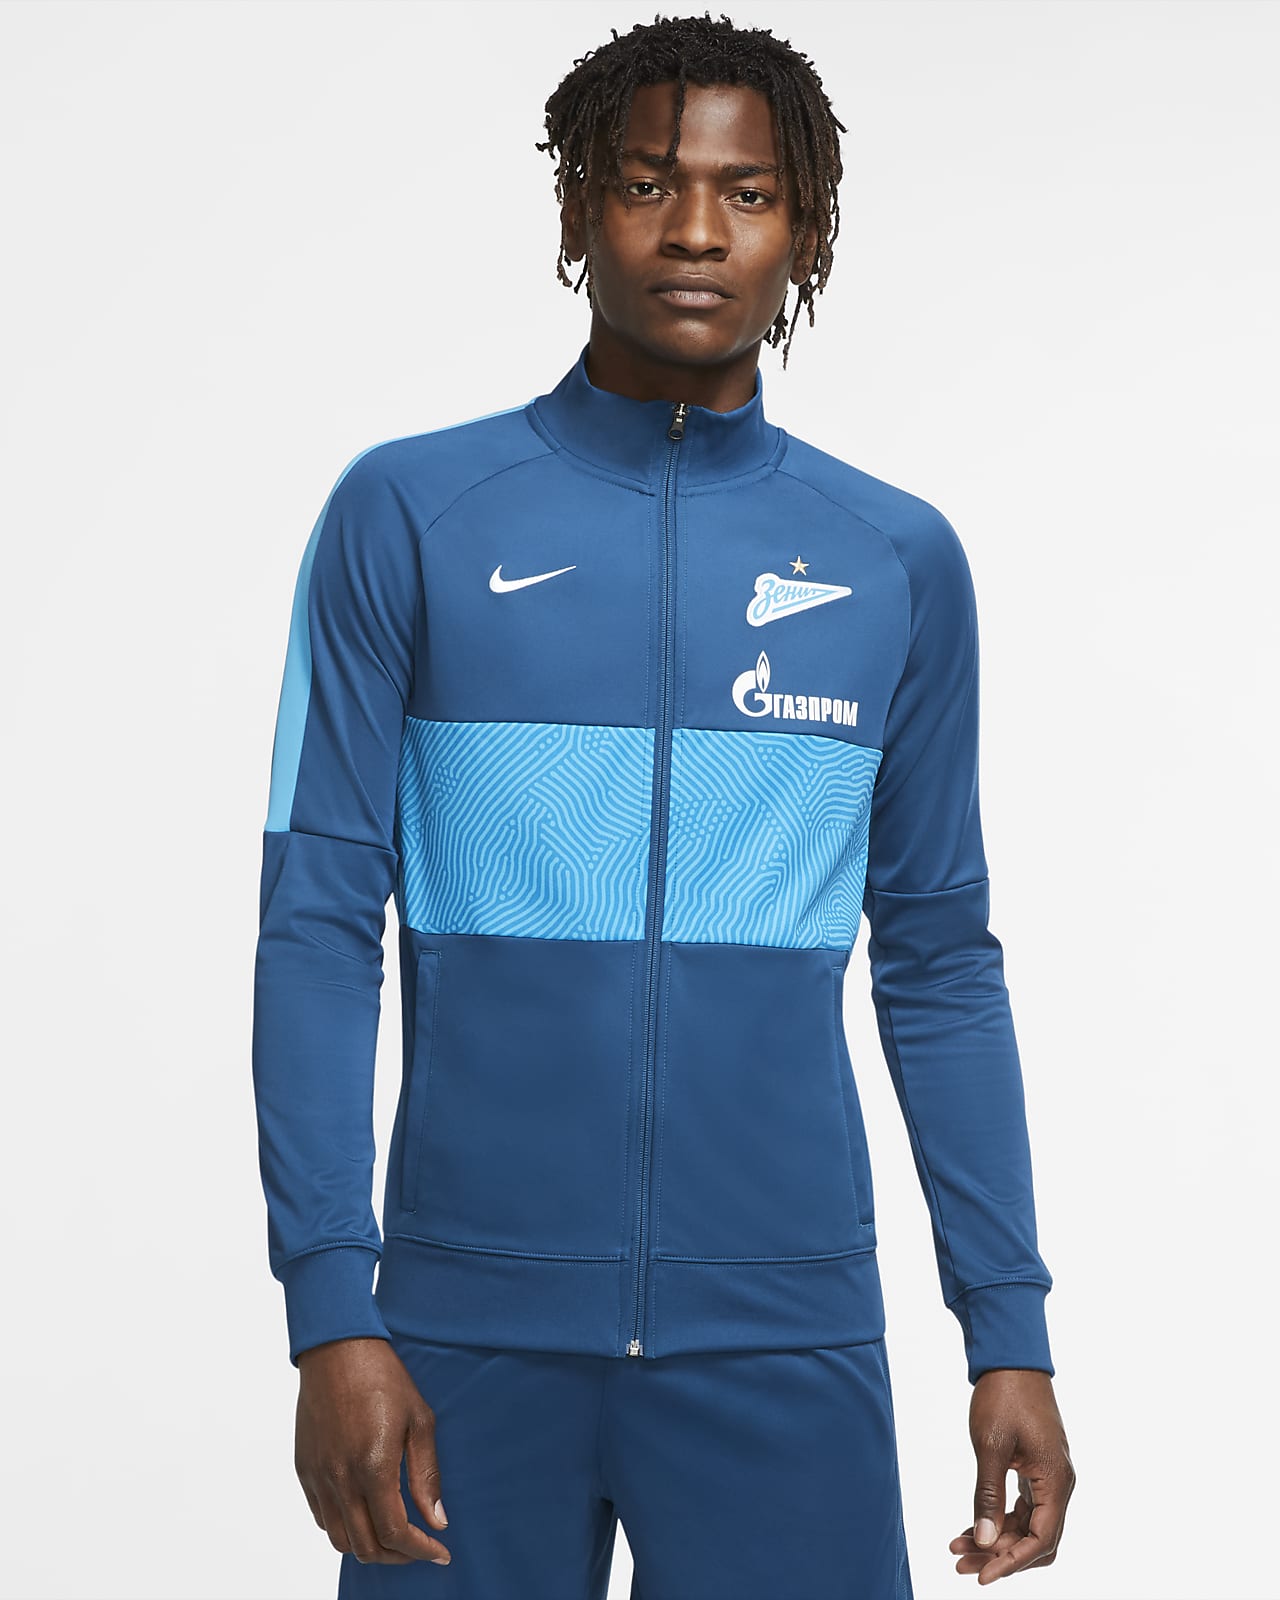 Zenit Saint Petersburg Track Jacket Fur Herren Nike De